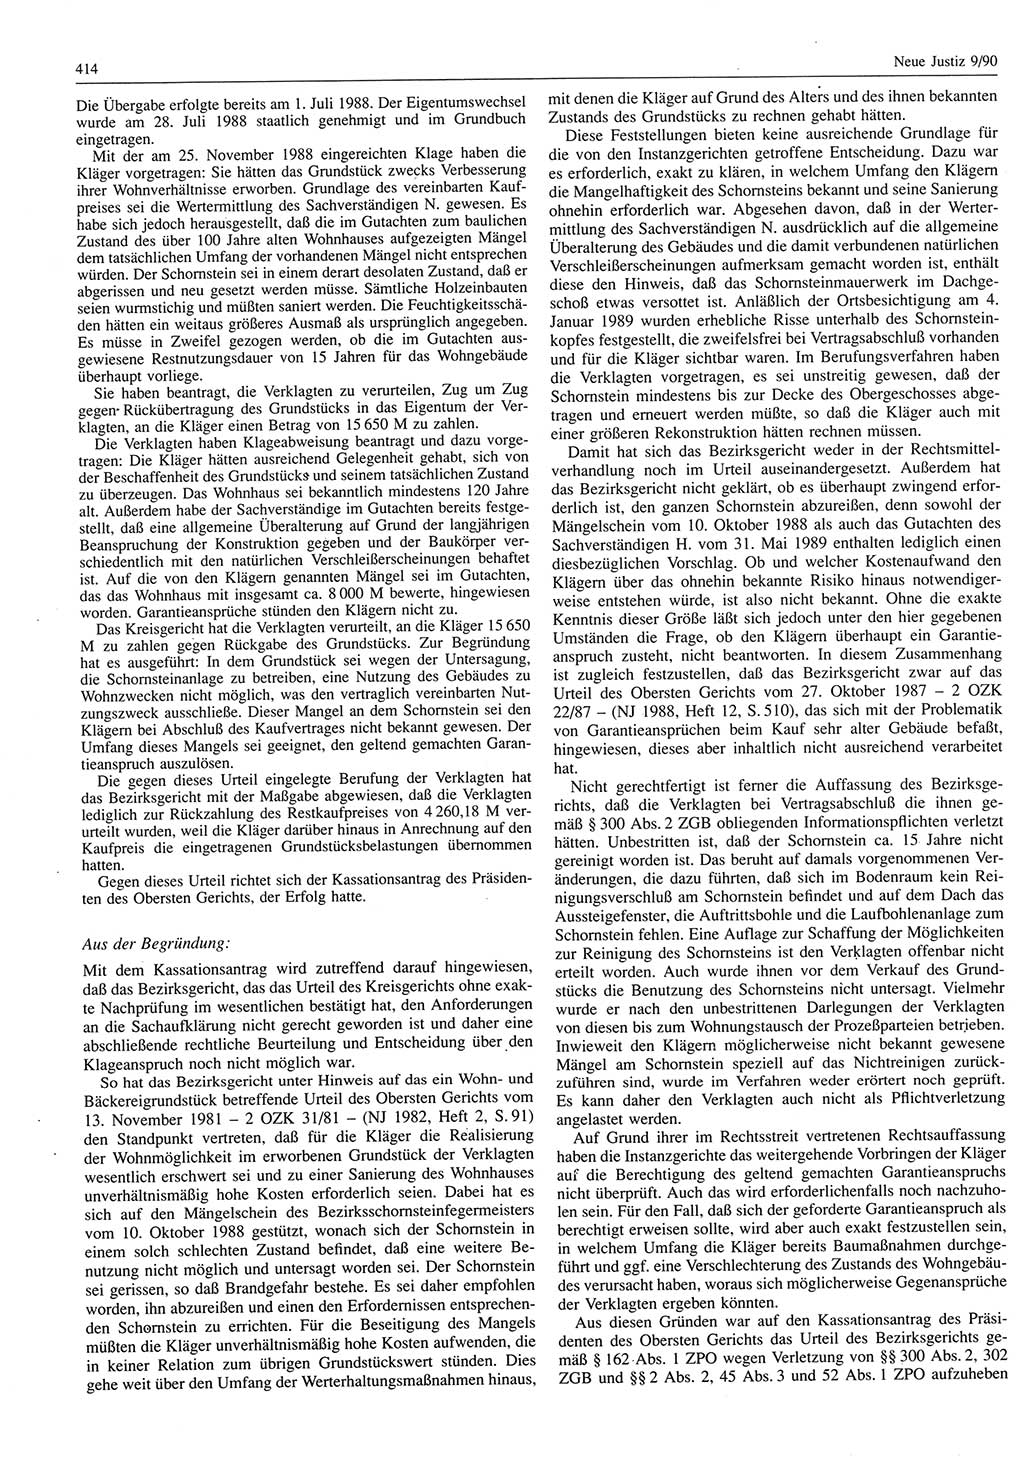 Neue Justiz (NJ), Zeitschrift für Rechtsetzung und Rechtsanwendung [Deutsche Demokratische Republik (DDR)], 44. Jahrgang 1990, Seite 414 (NJ DDR 1990, S. 414)